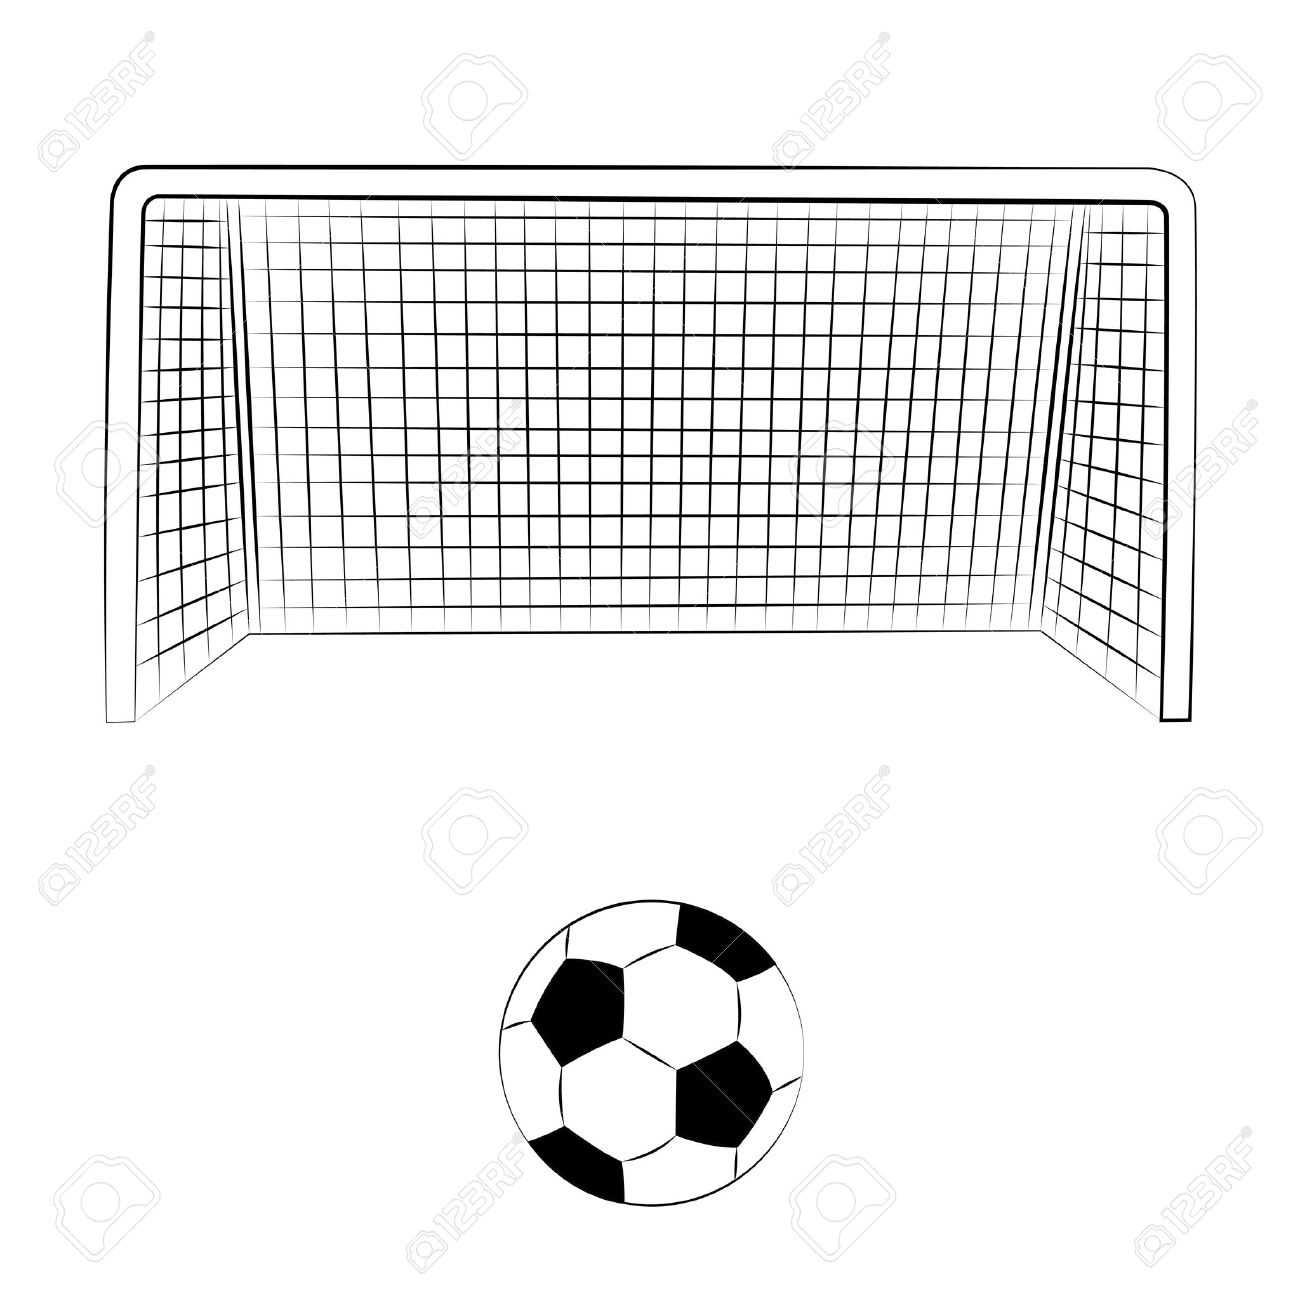 Soccer Goal Clipart #1 - Soccer Goal Clipart